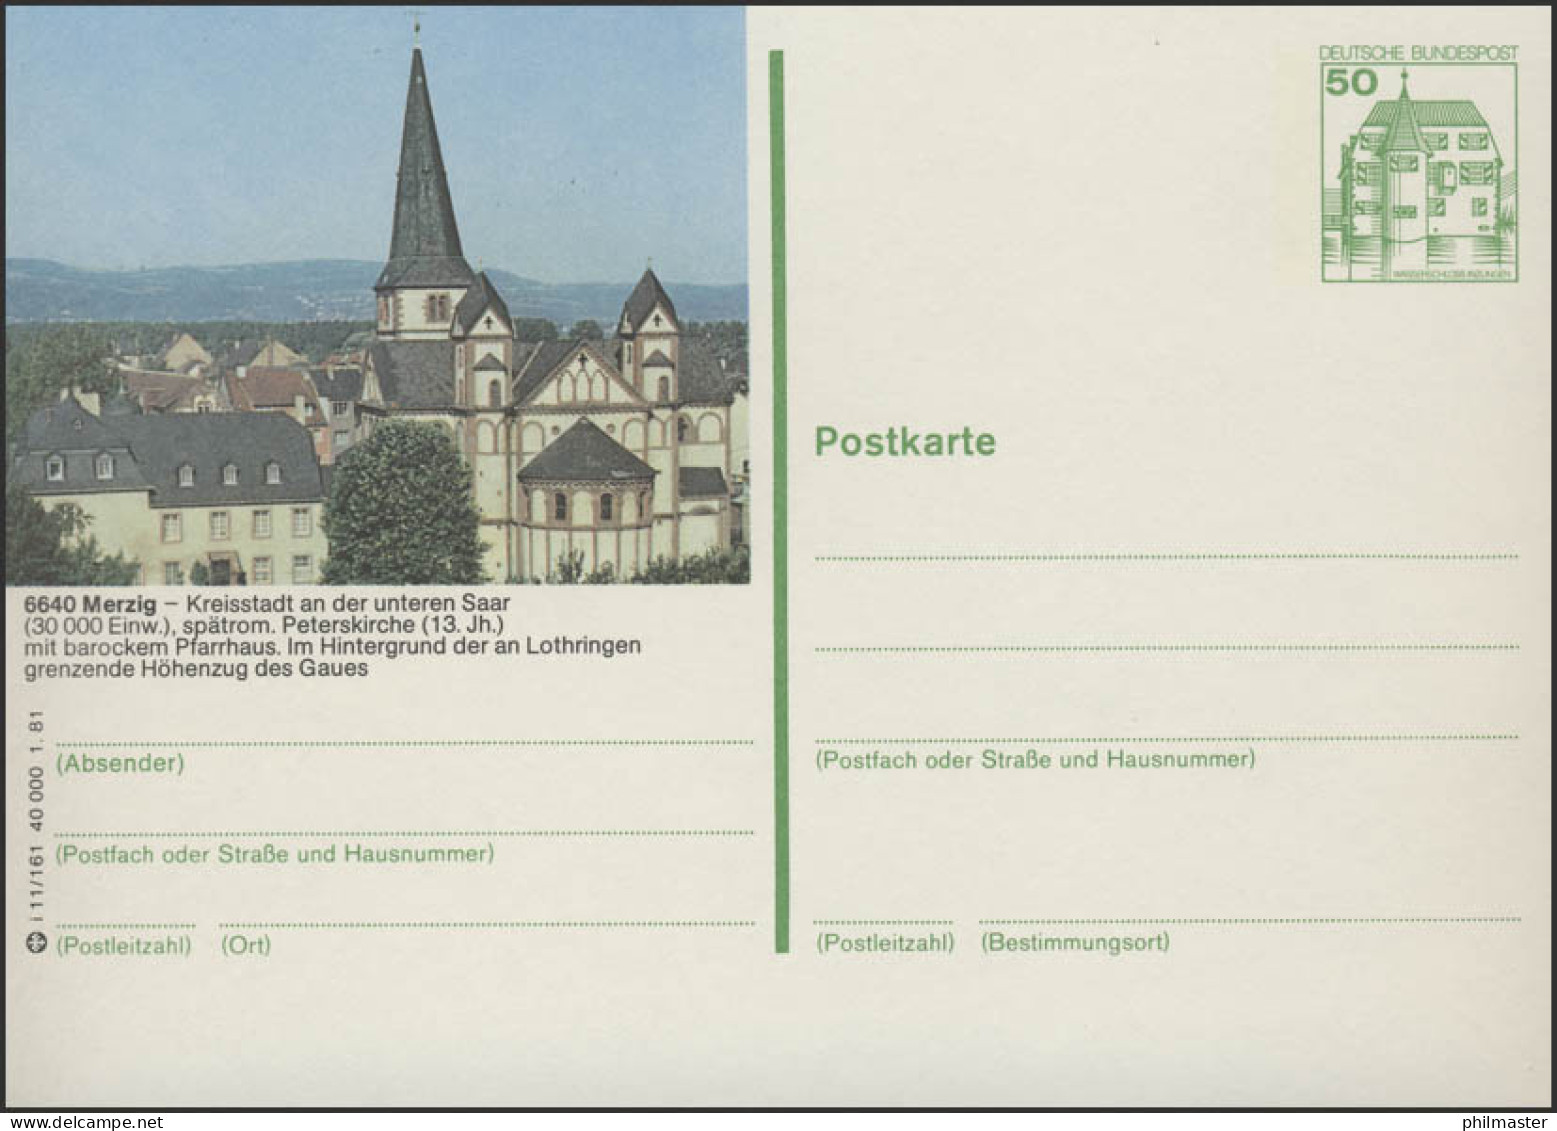 P134-i11/161 - 6640 Merzig, St.-Peter-Kirche ** - Cartes Postales Illustrées - Neuves